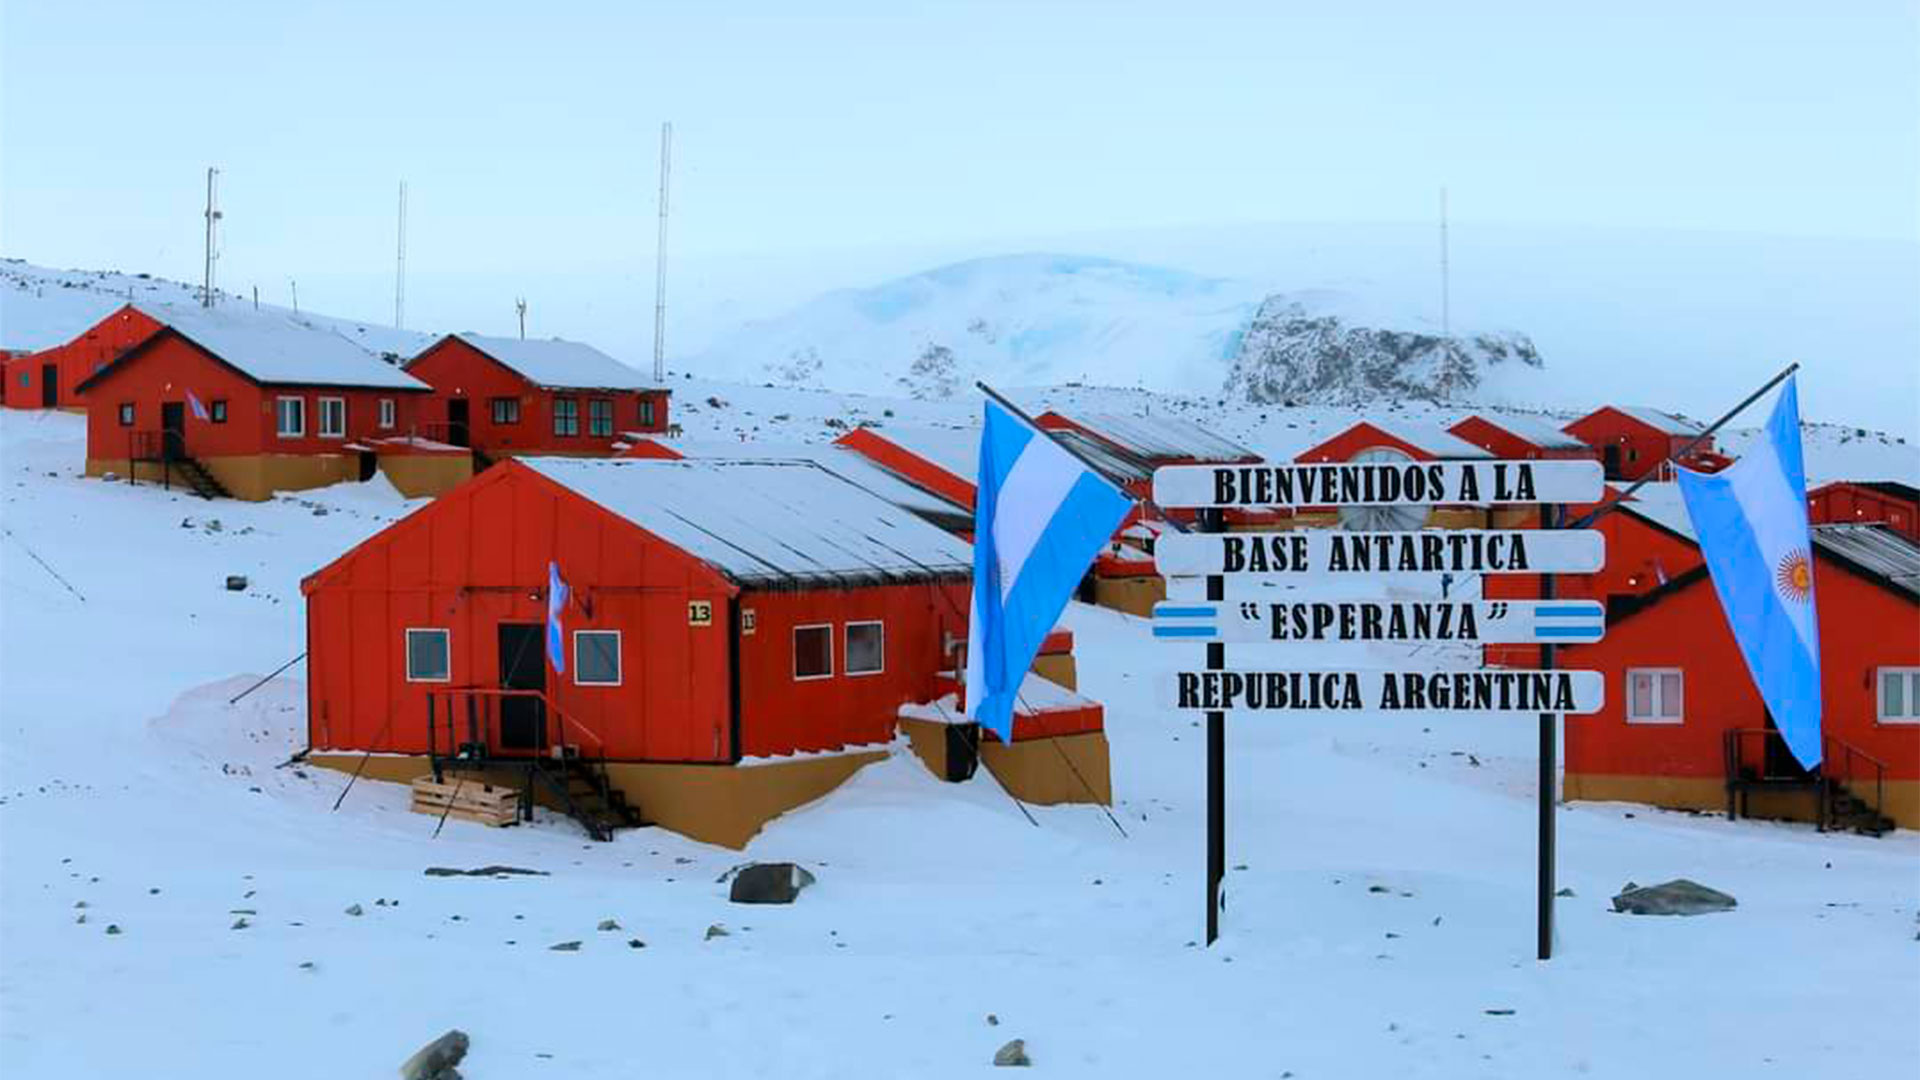 Los laboratorios, que serán transportados a la Antártida en la próxima campaña de verano, permitirán ampliar las investigaciones científicas del país en el continente blanco 
 